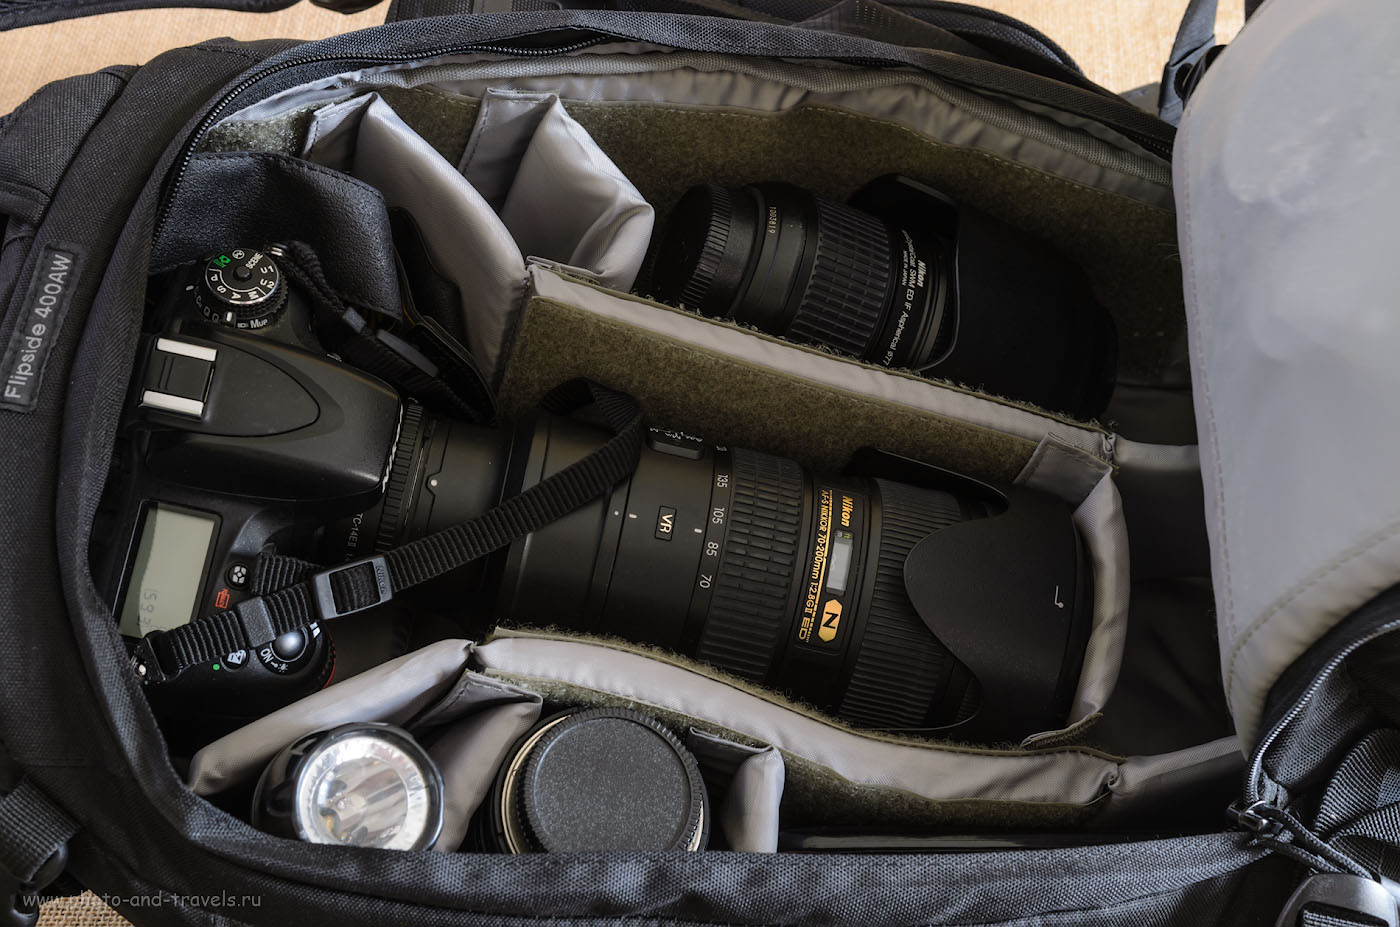 Фото 9. Если мы меняем универсальную линзу Nikon 24-70mm f/2.8 на телеобъектив Nikon 70-200mm f/2.8, то даже с экстендером Nikon TC-14E II, он может храниться в рюкзаке для фотоаппарата Lowepro Flipside 400 AW в собранном виде.